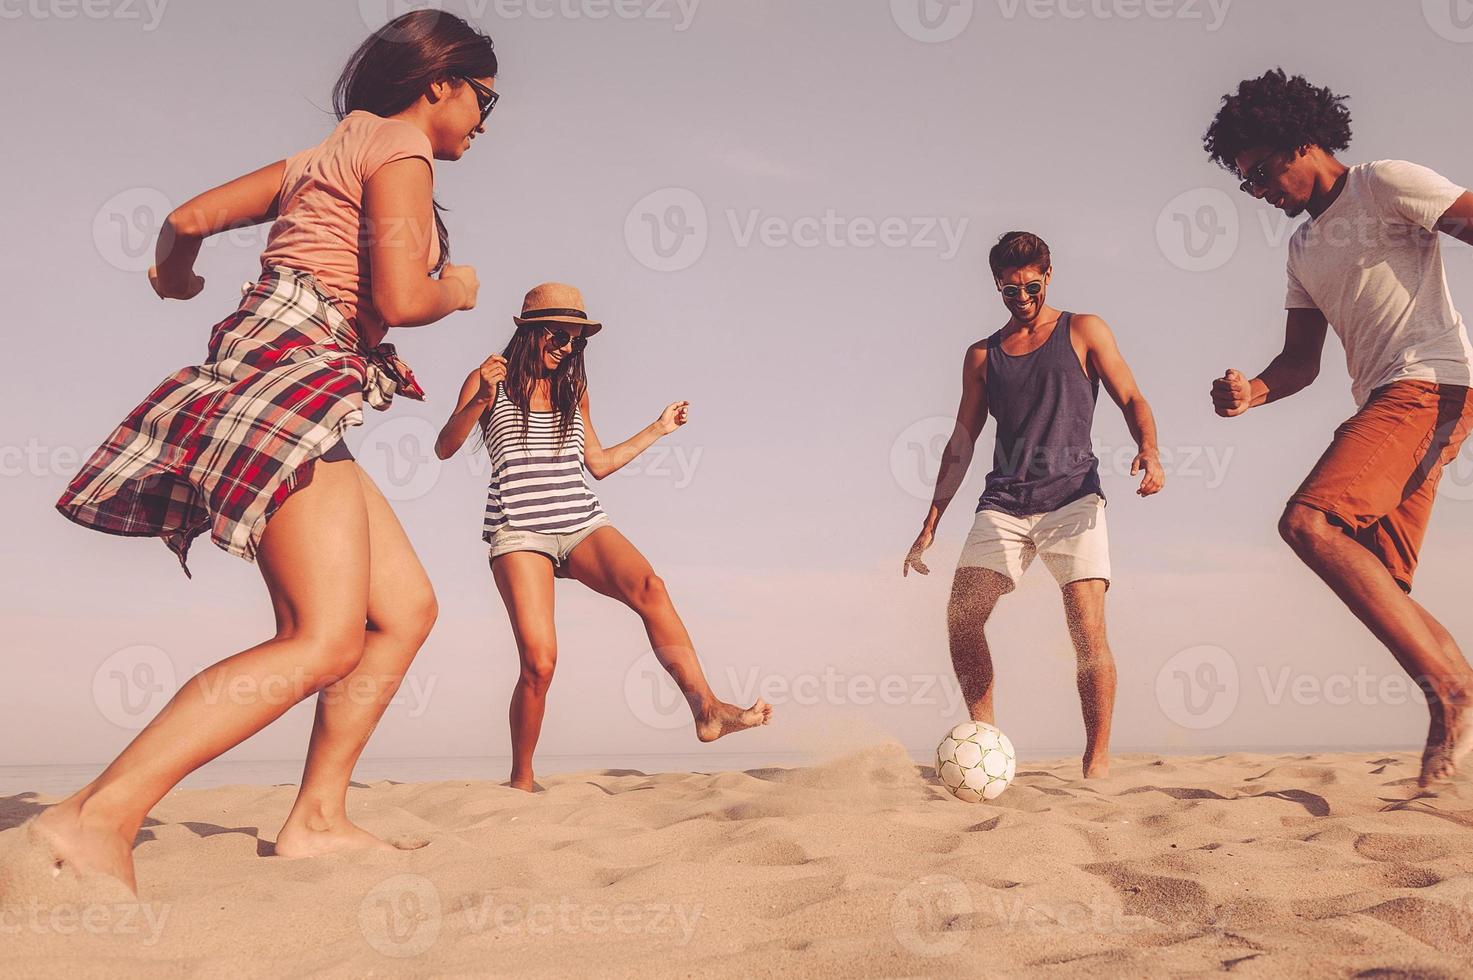 só me divertindo. grupo de jovens alegres brincando com bola de futebol na praia com mar ao fundo foto